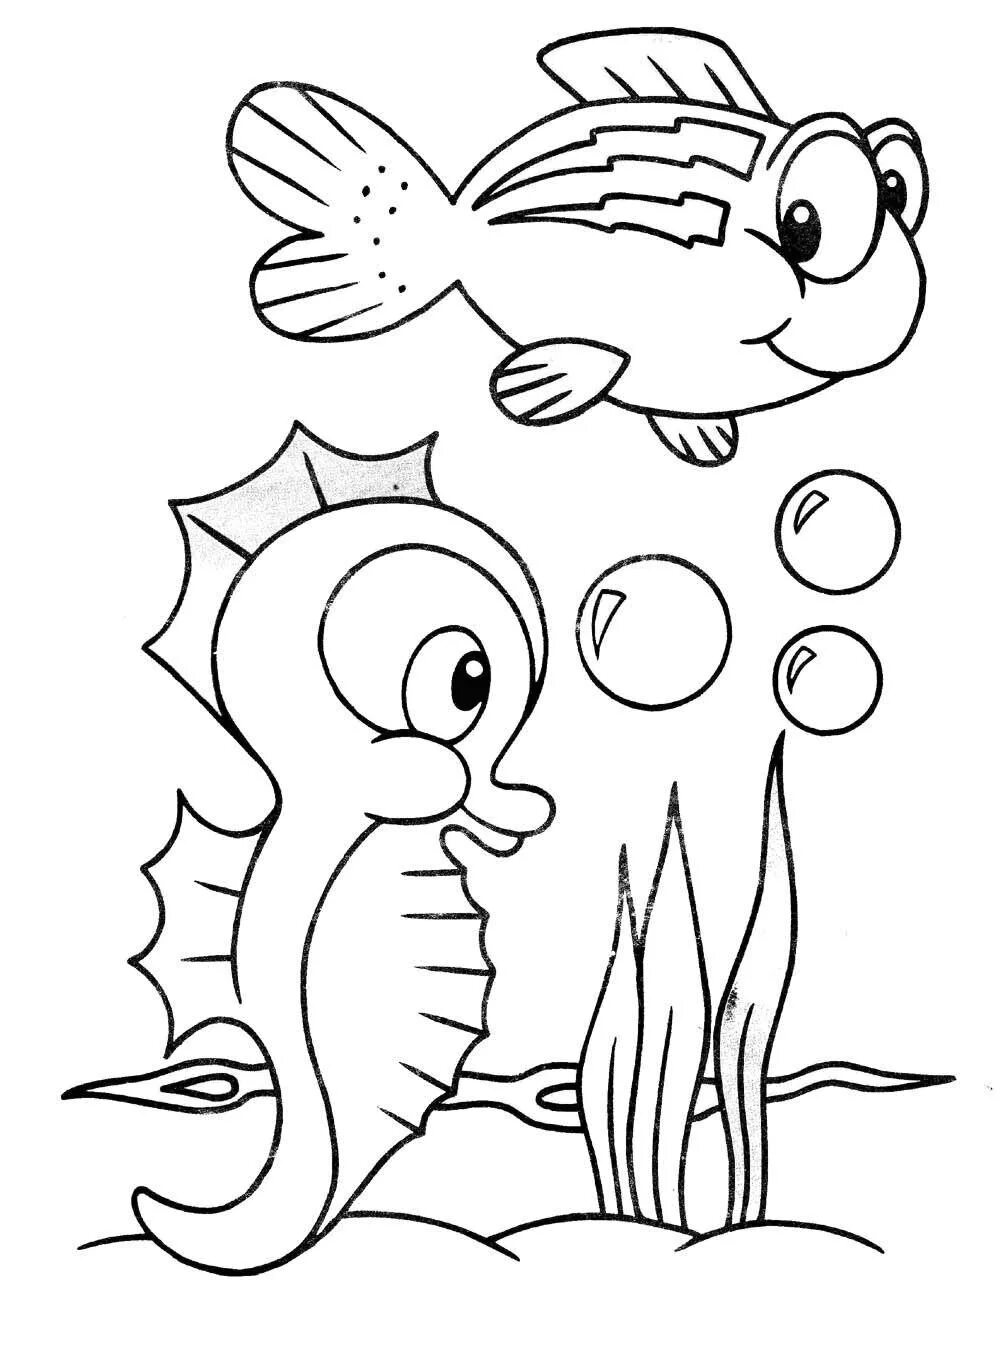 Раскраска рыбы для детей 6 лет. Раскраска рыбка. Морские обитатели раскраска для детей. Рыбка раскраска для детей. Морские рыбки раскраска для детей.